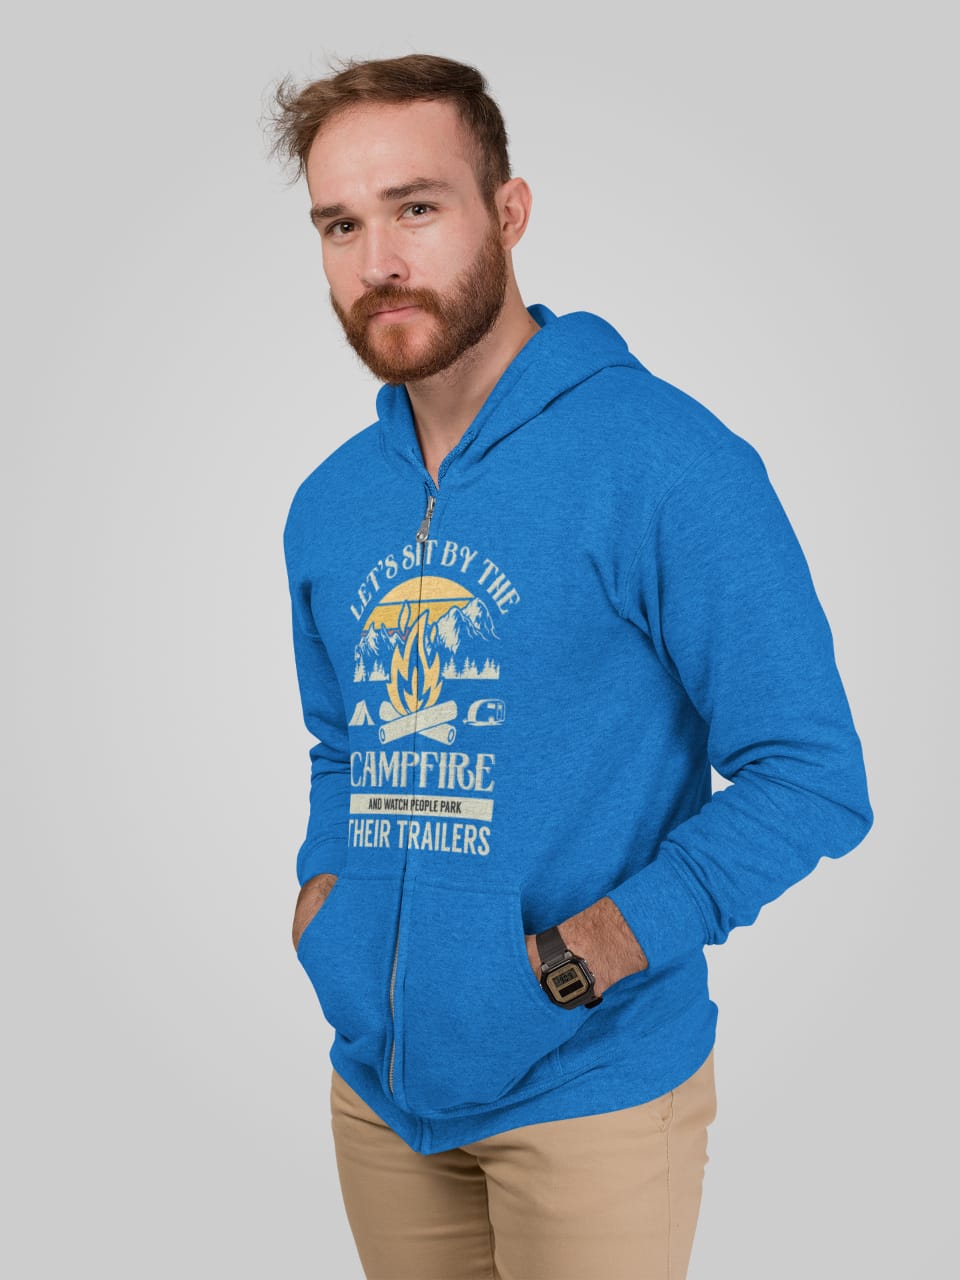 Sit by fire and watch park campers; Full-zip hoodie sweatshirt